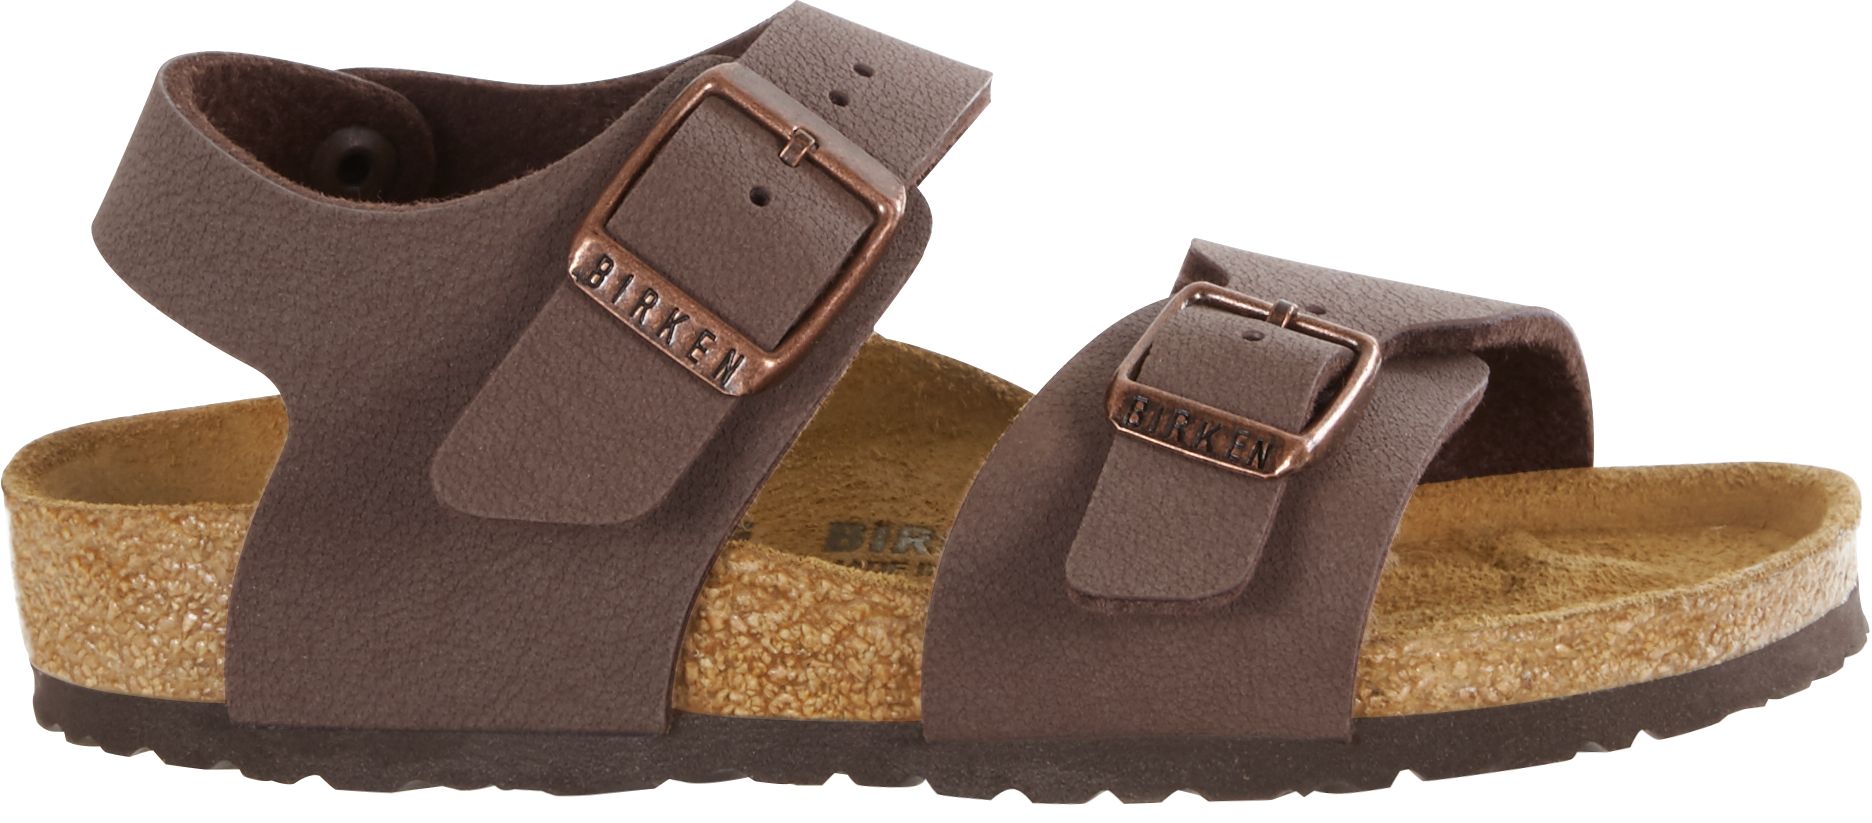 Dětské hnědé sandály Birkenstock New York Birko-Flor Nubuck